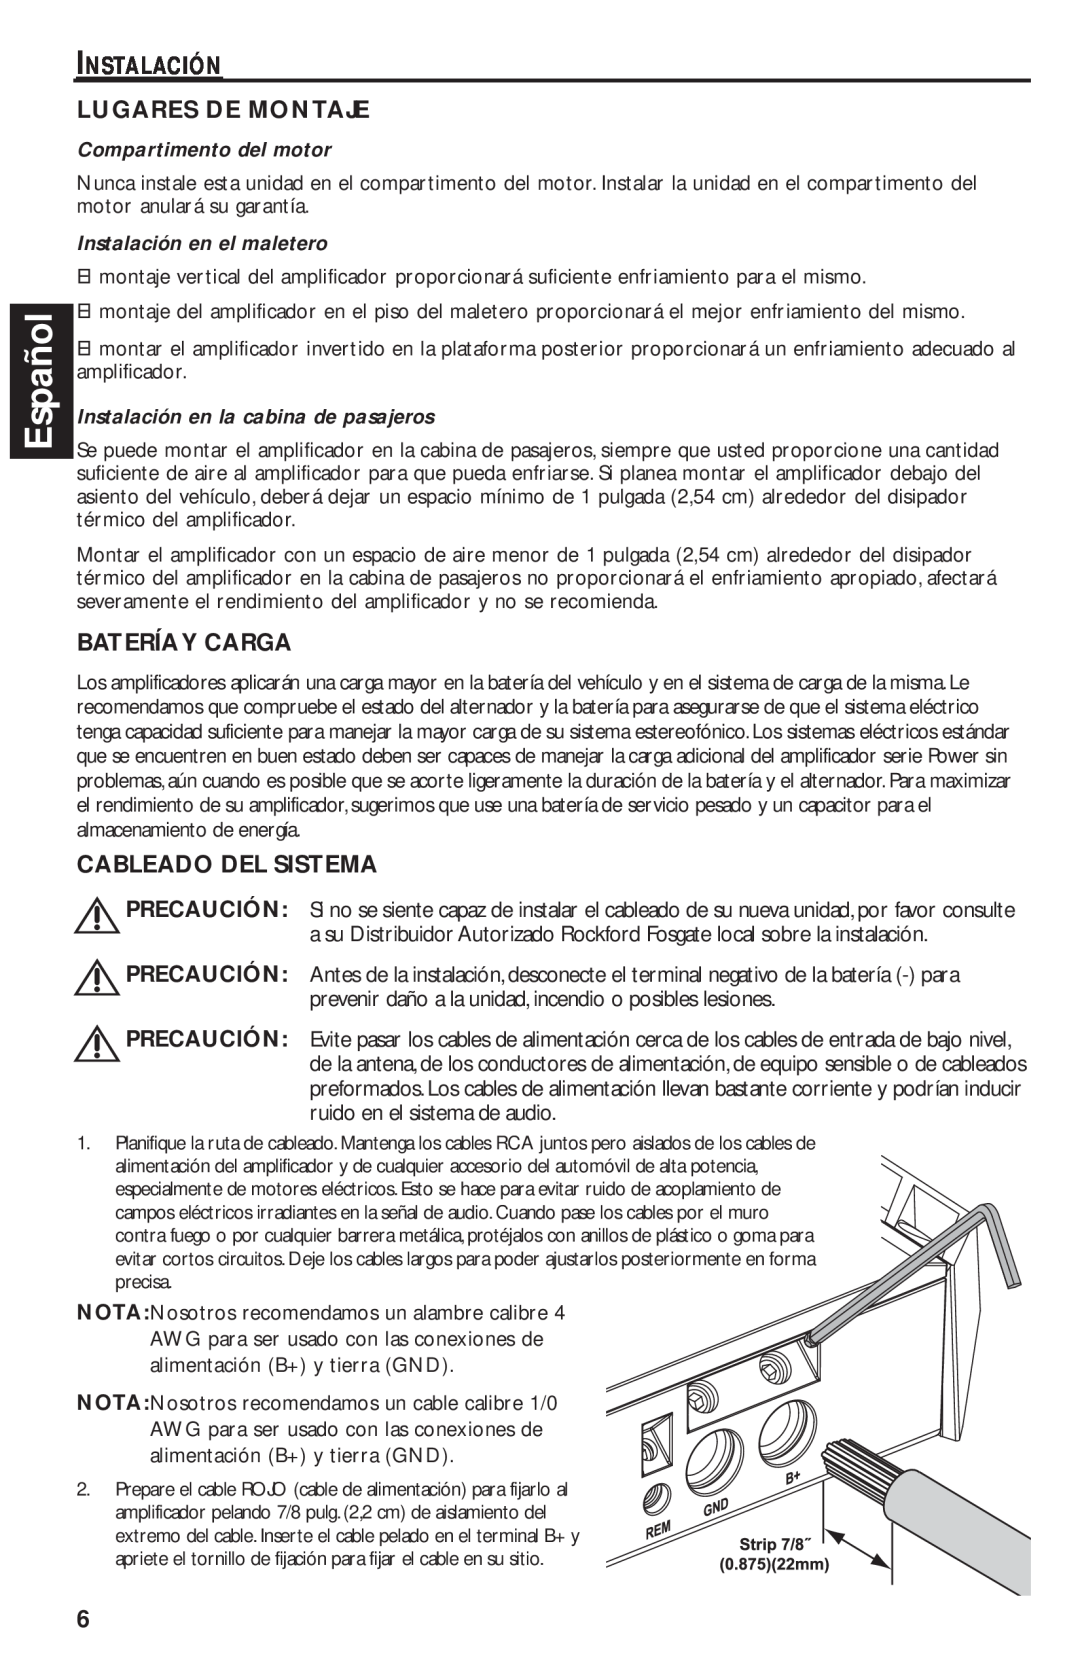 Rockford Fosgate T1000-4 manual Español, Instalación Lugares De Montaje, Bateríay Carga, Cableado Del Sistema 